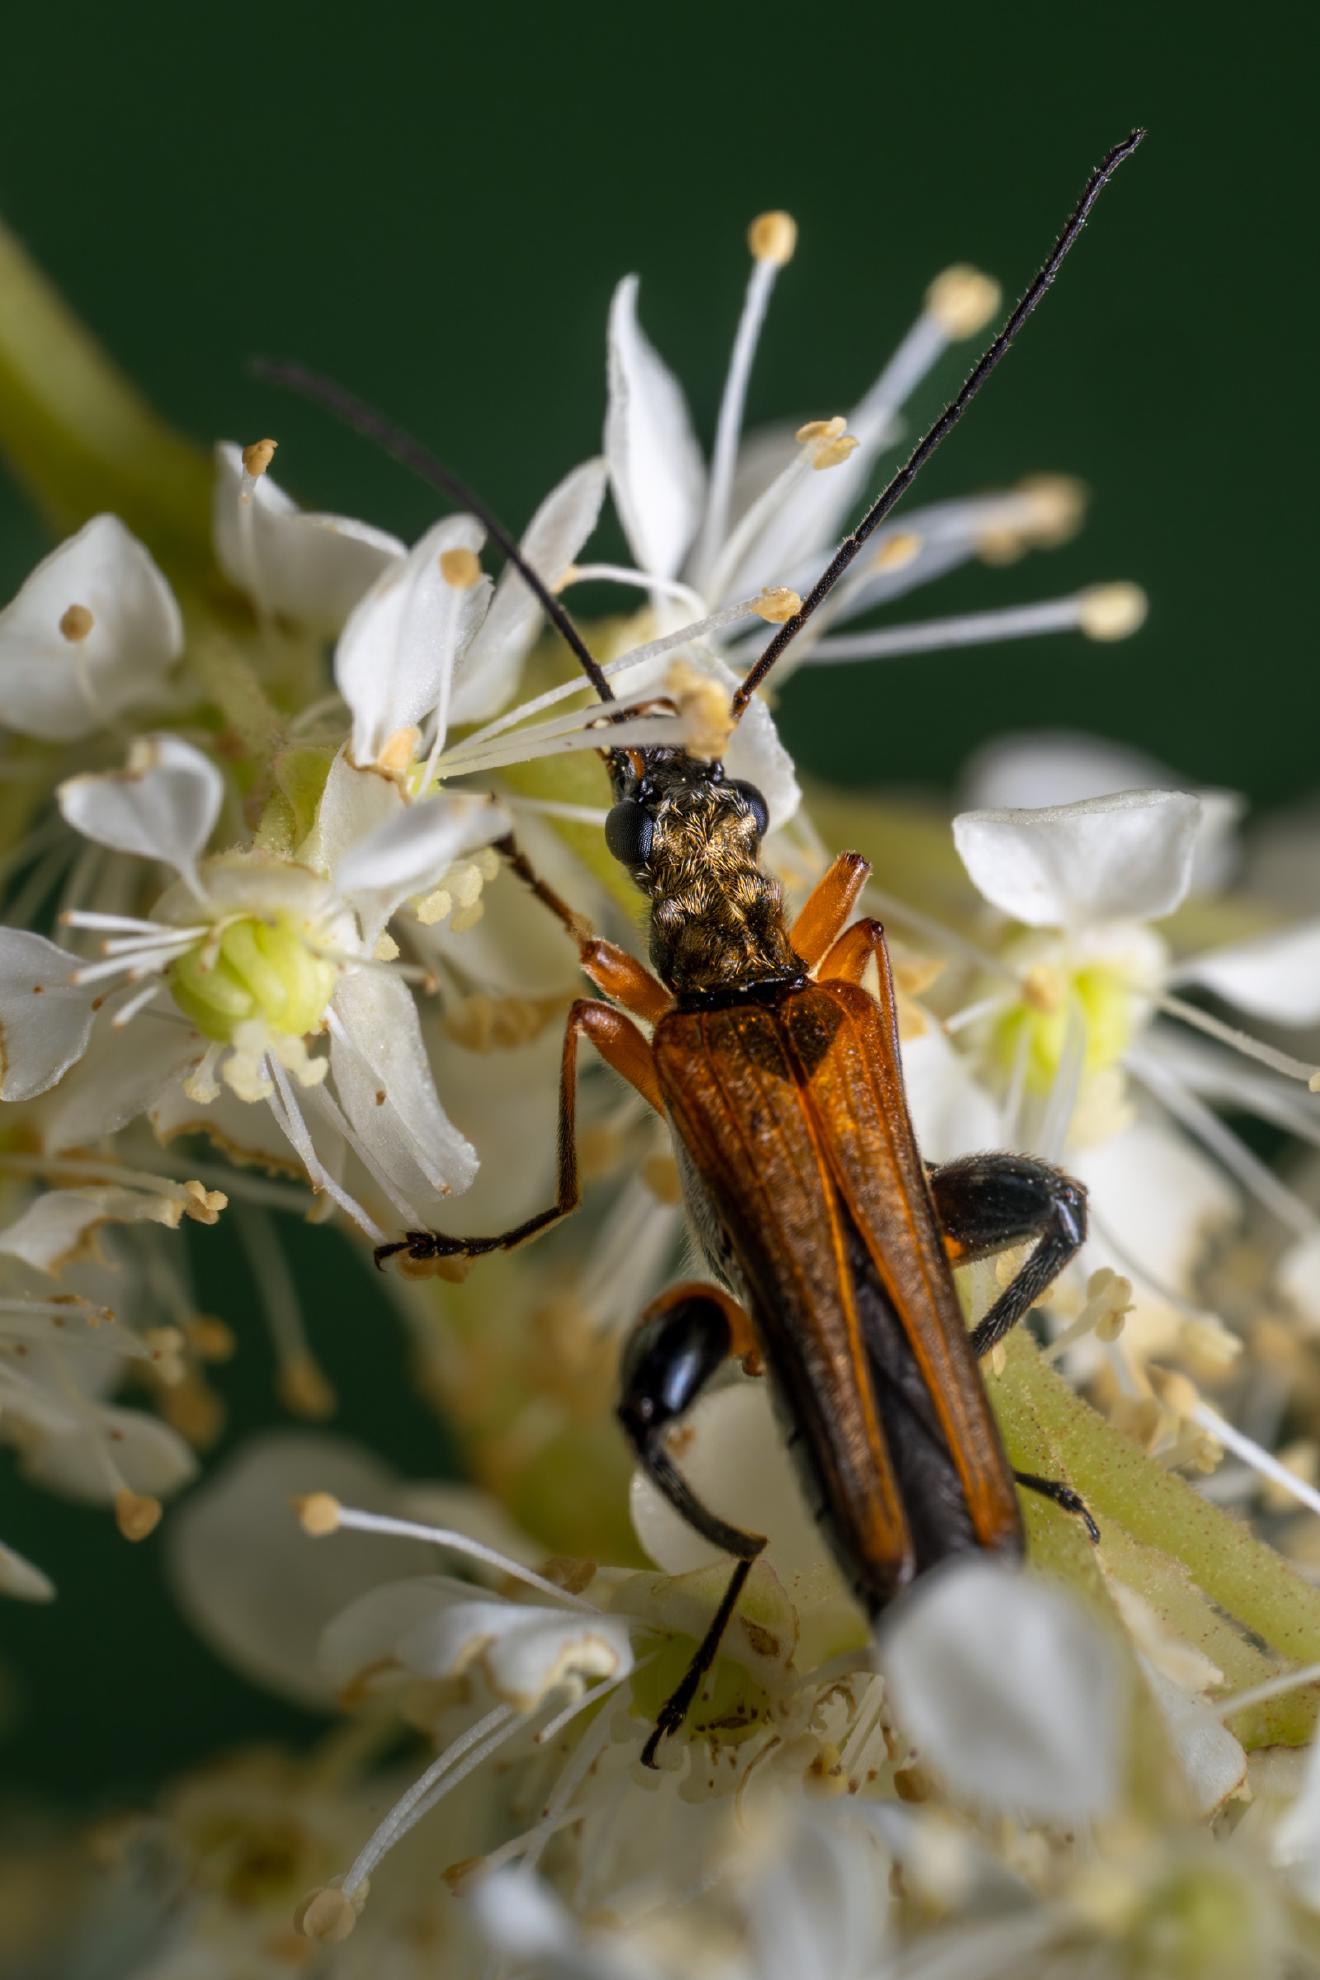 variable longhorn beetle – No. 2